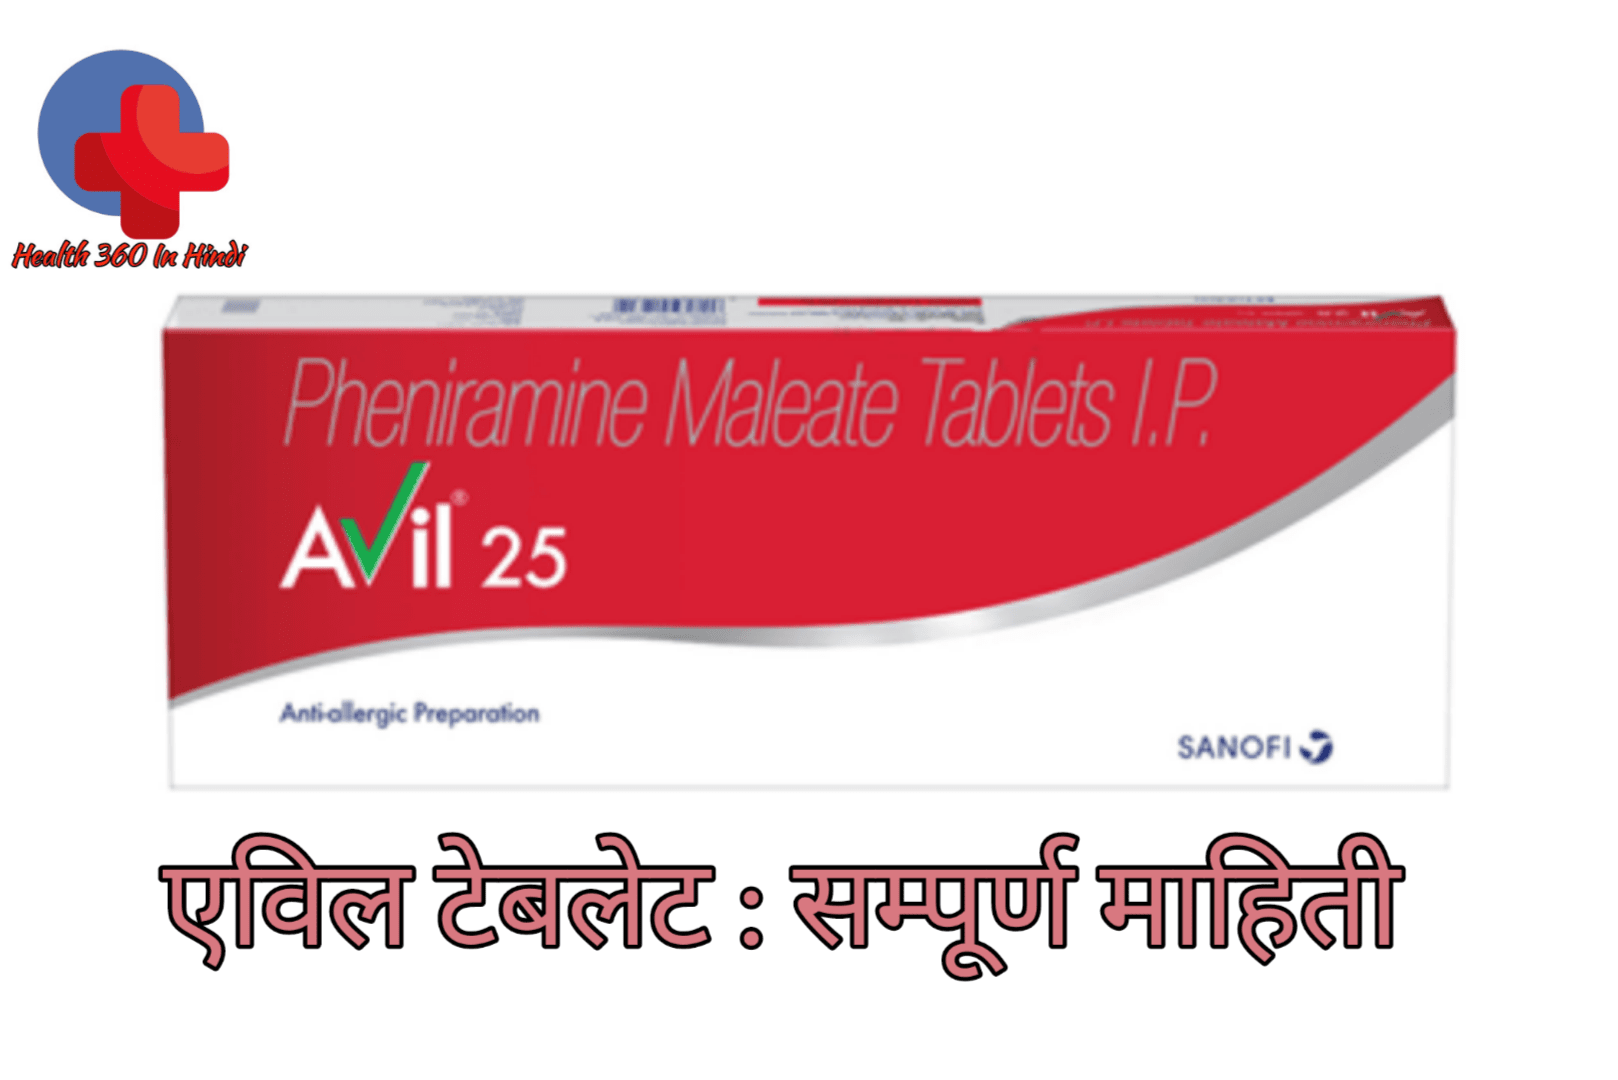 Avil Tablet Uses in Hindi